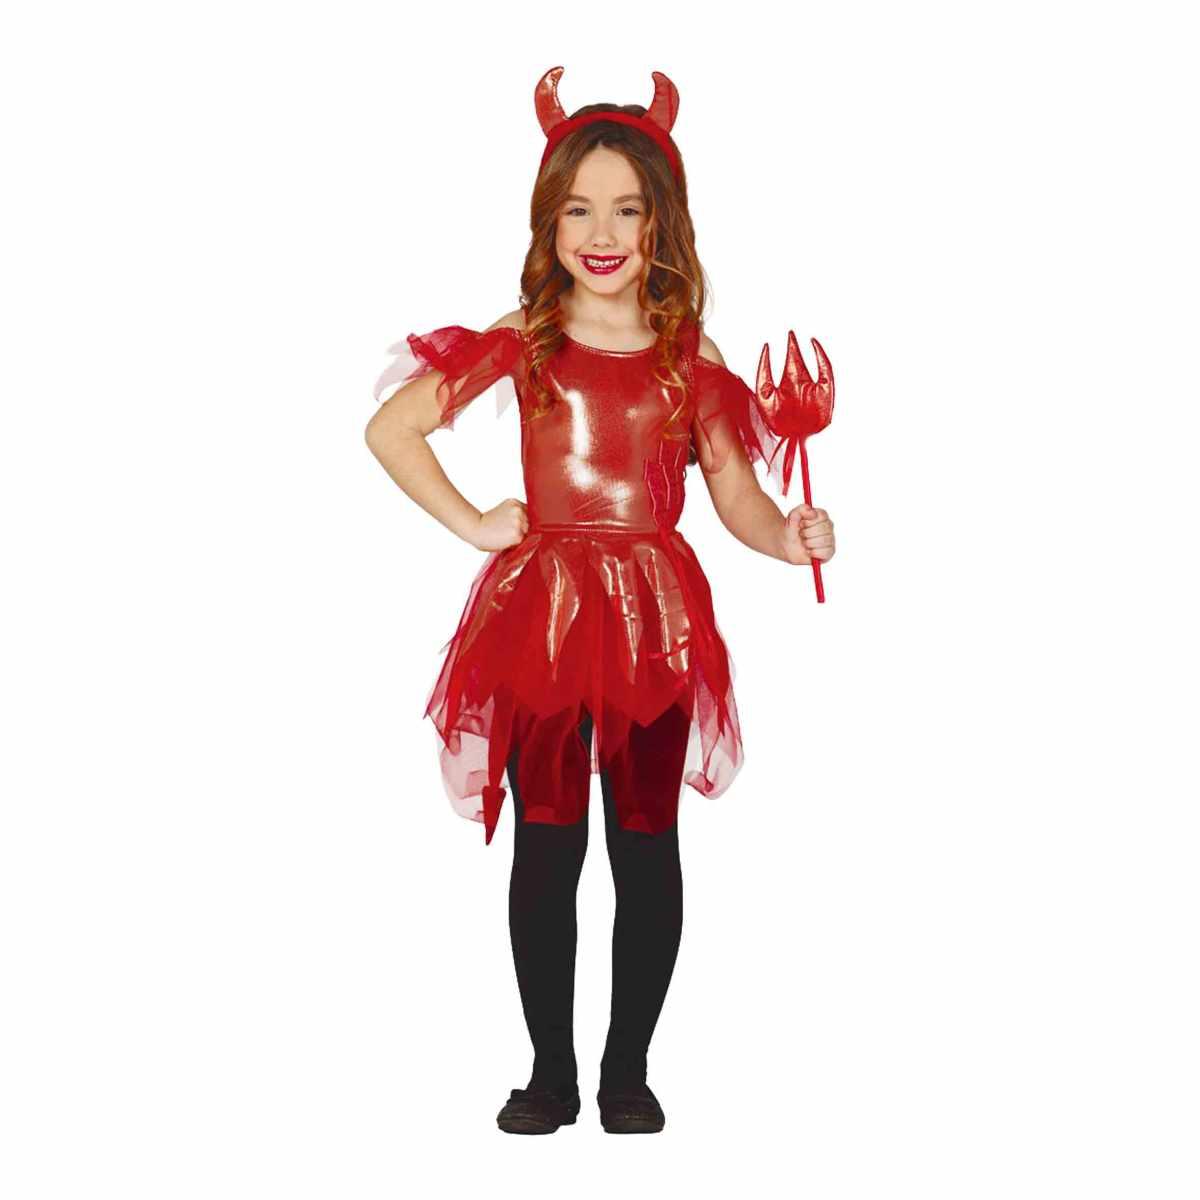 Costume Carnevale Bambina: Diavoletta Rossa in Vendita su